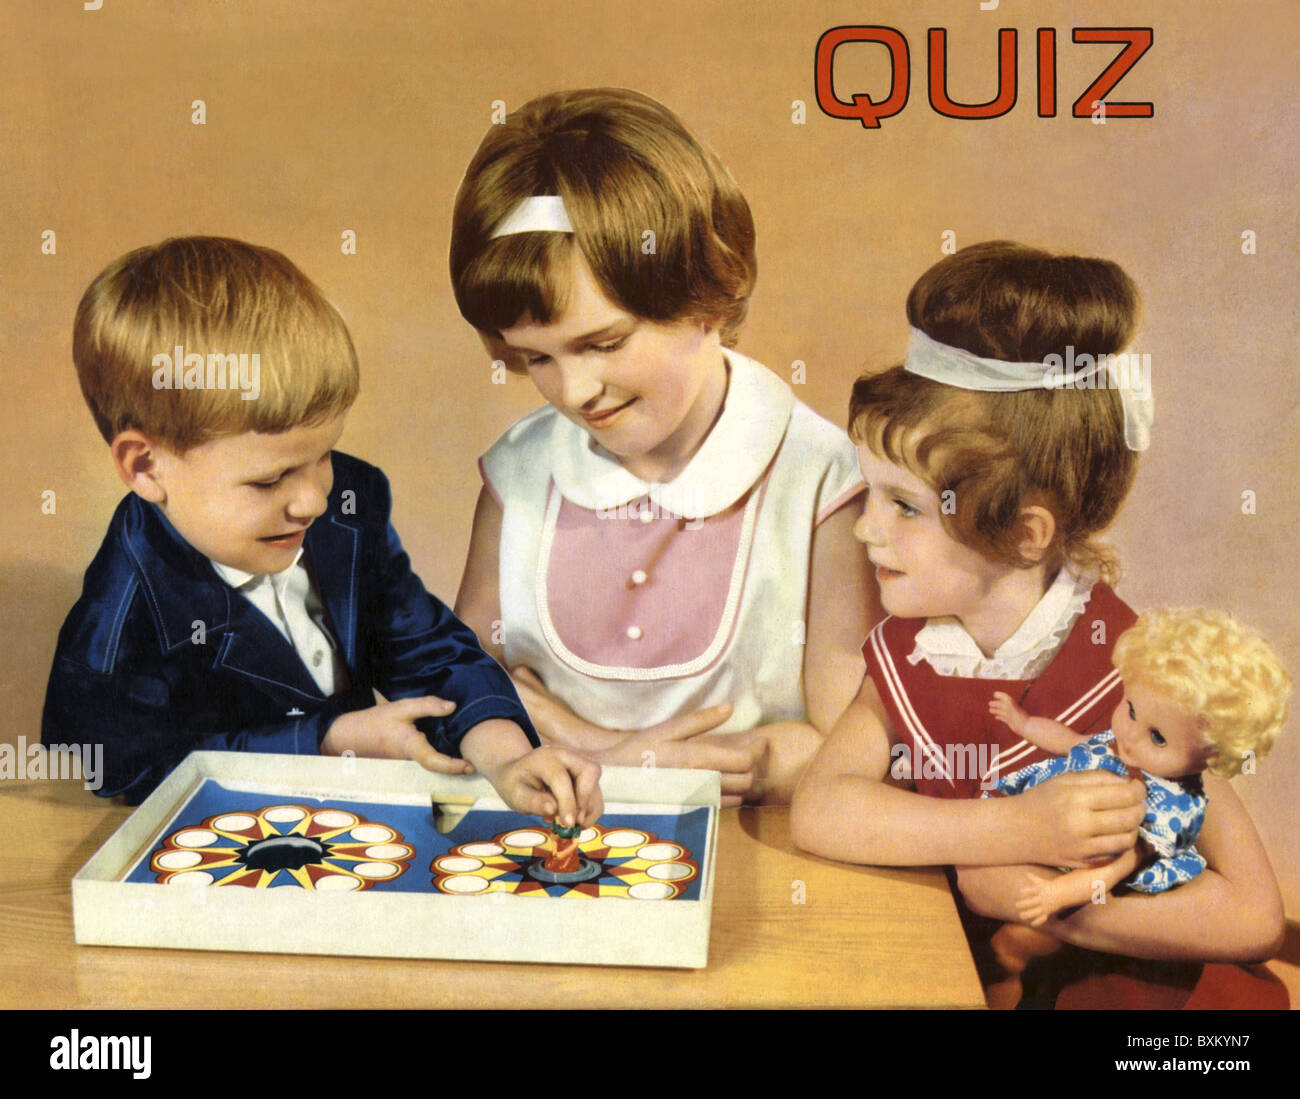 Quiz per bambini immagini e fotografie stock ad alta risoluzione - Alamy